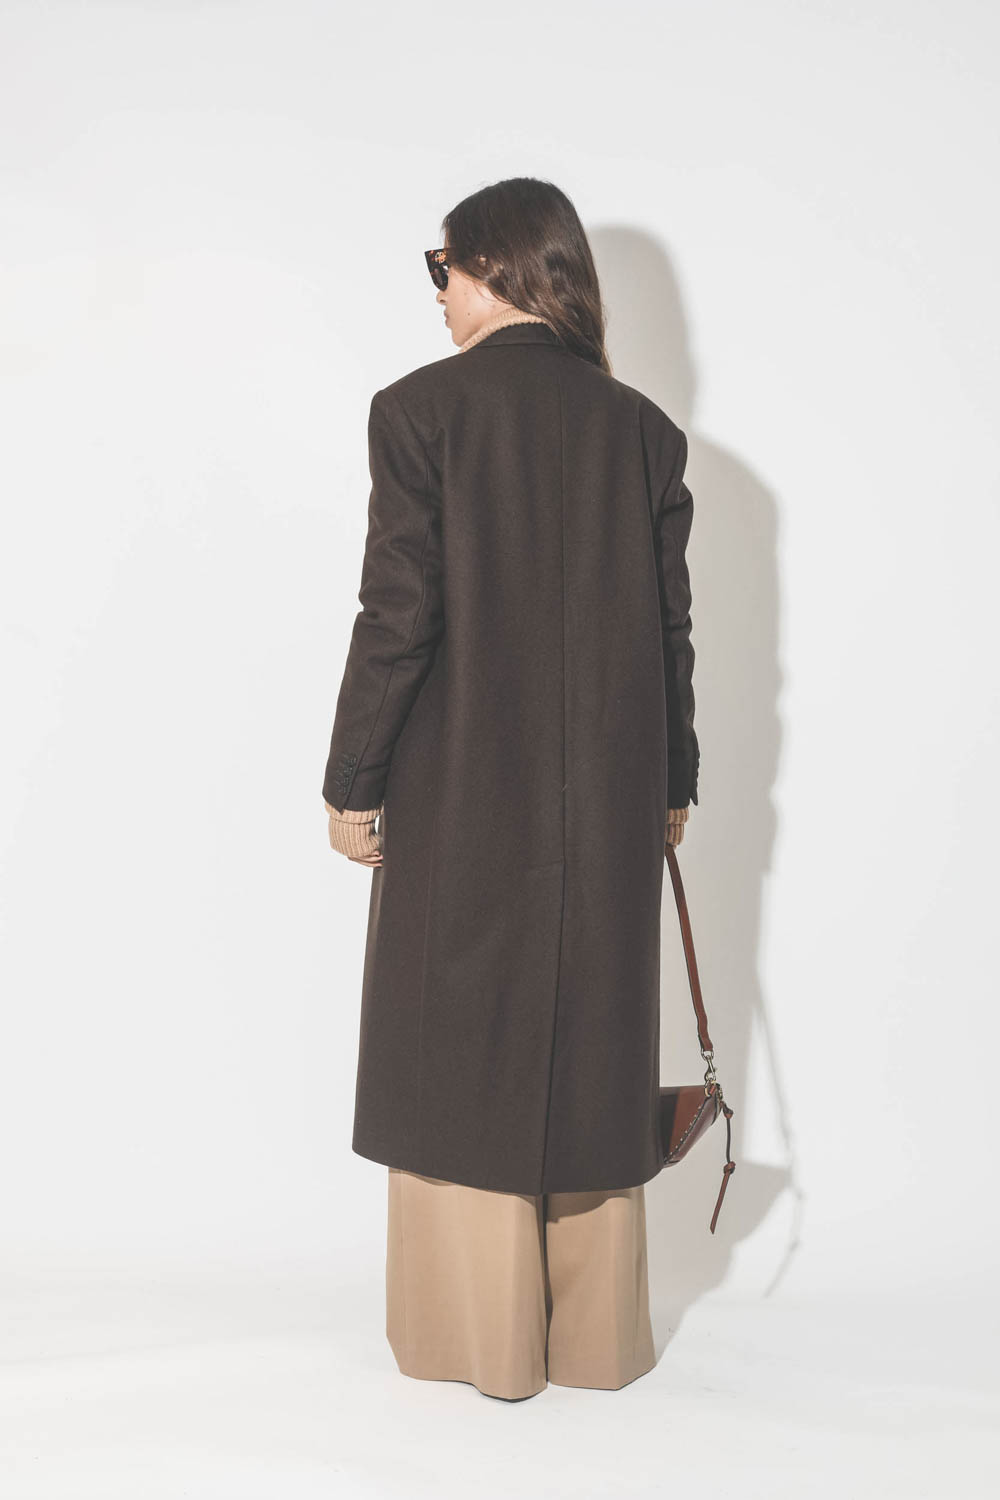 Manteau long en drap de laine marron Maison Flaneur. Porté de dos.